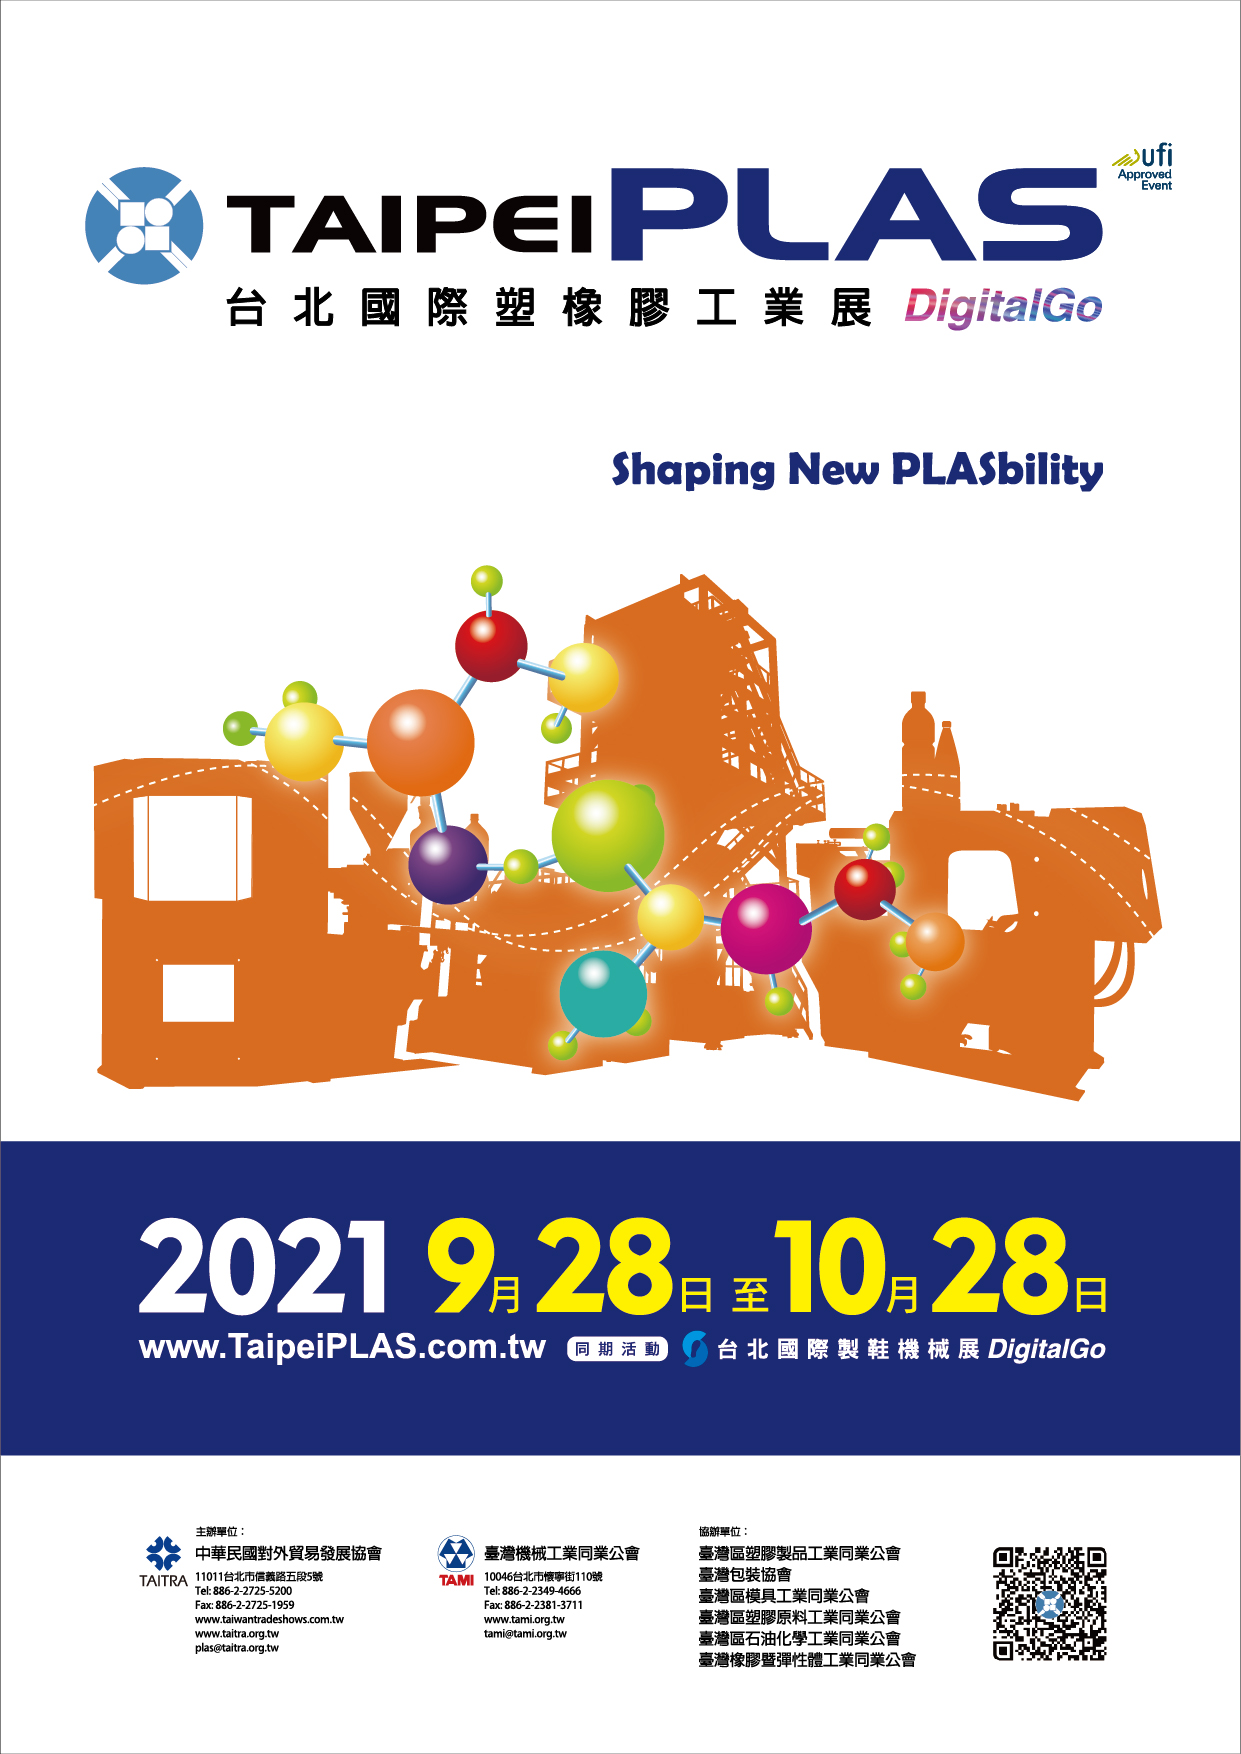 Taipei PLAS Digital Go (façonner une nouvelle PLASbilité)